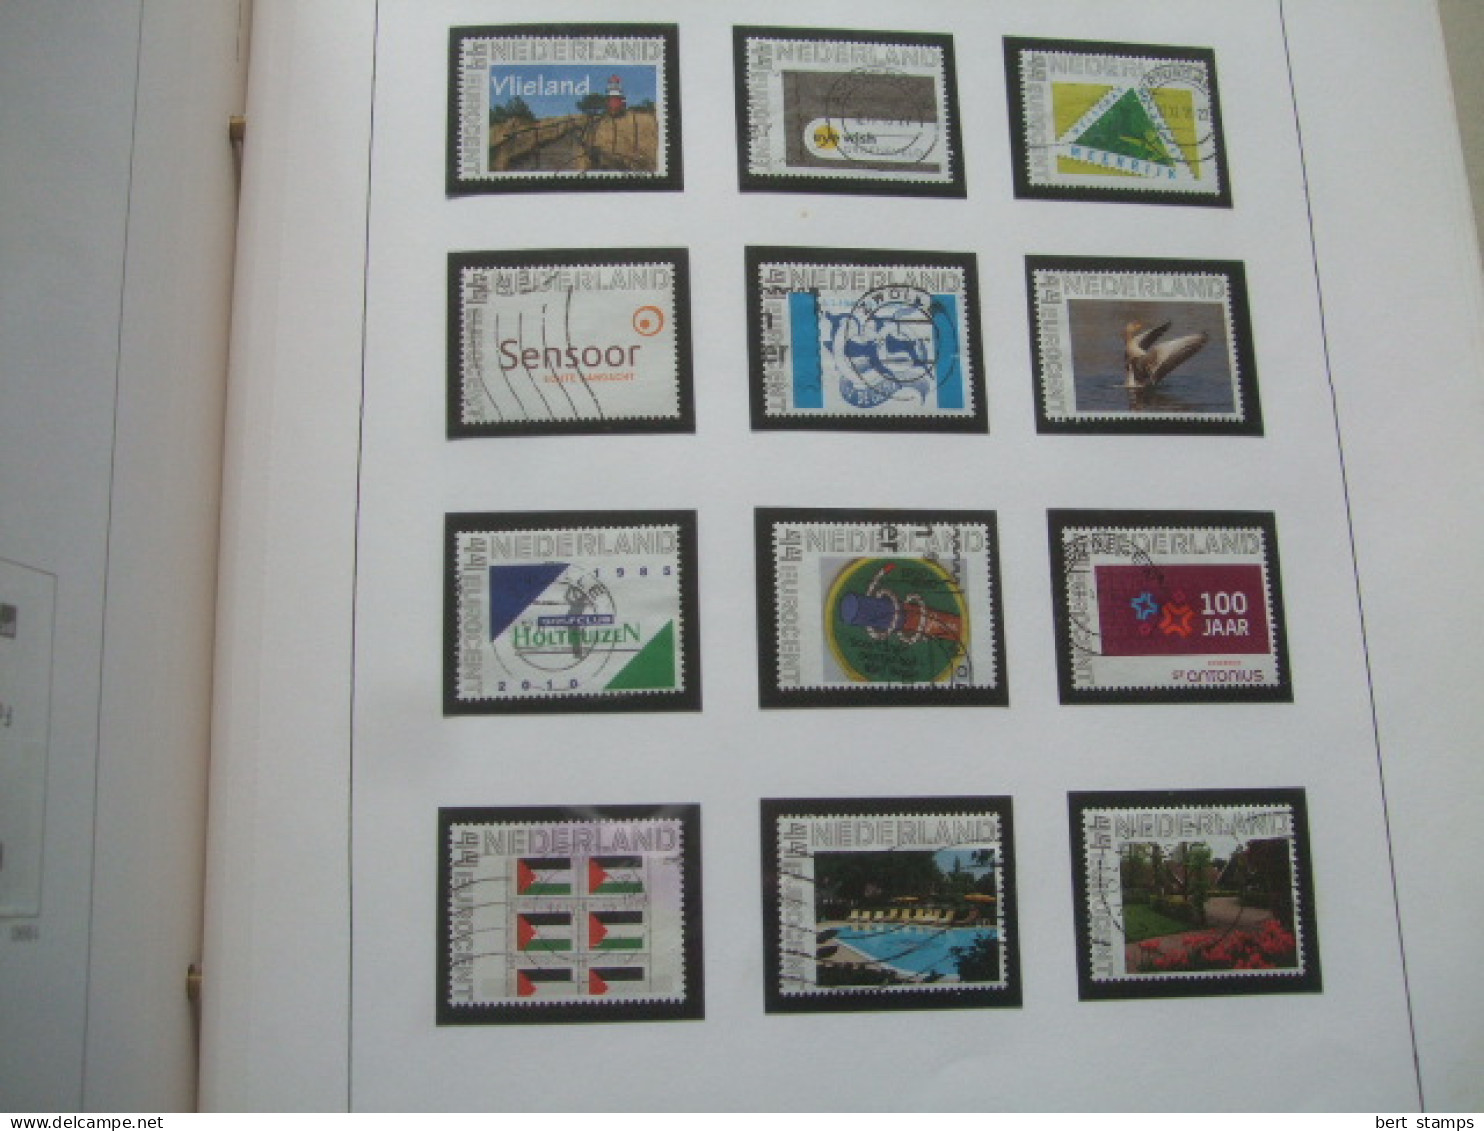 Verzameling persoonlijke postzegels op album bladen